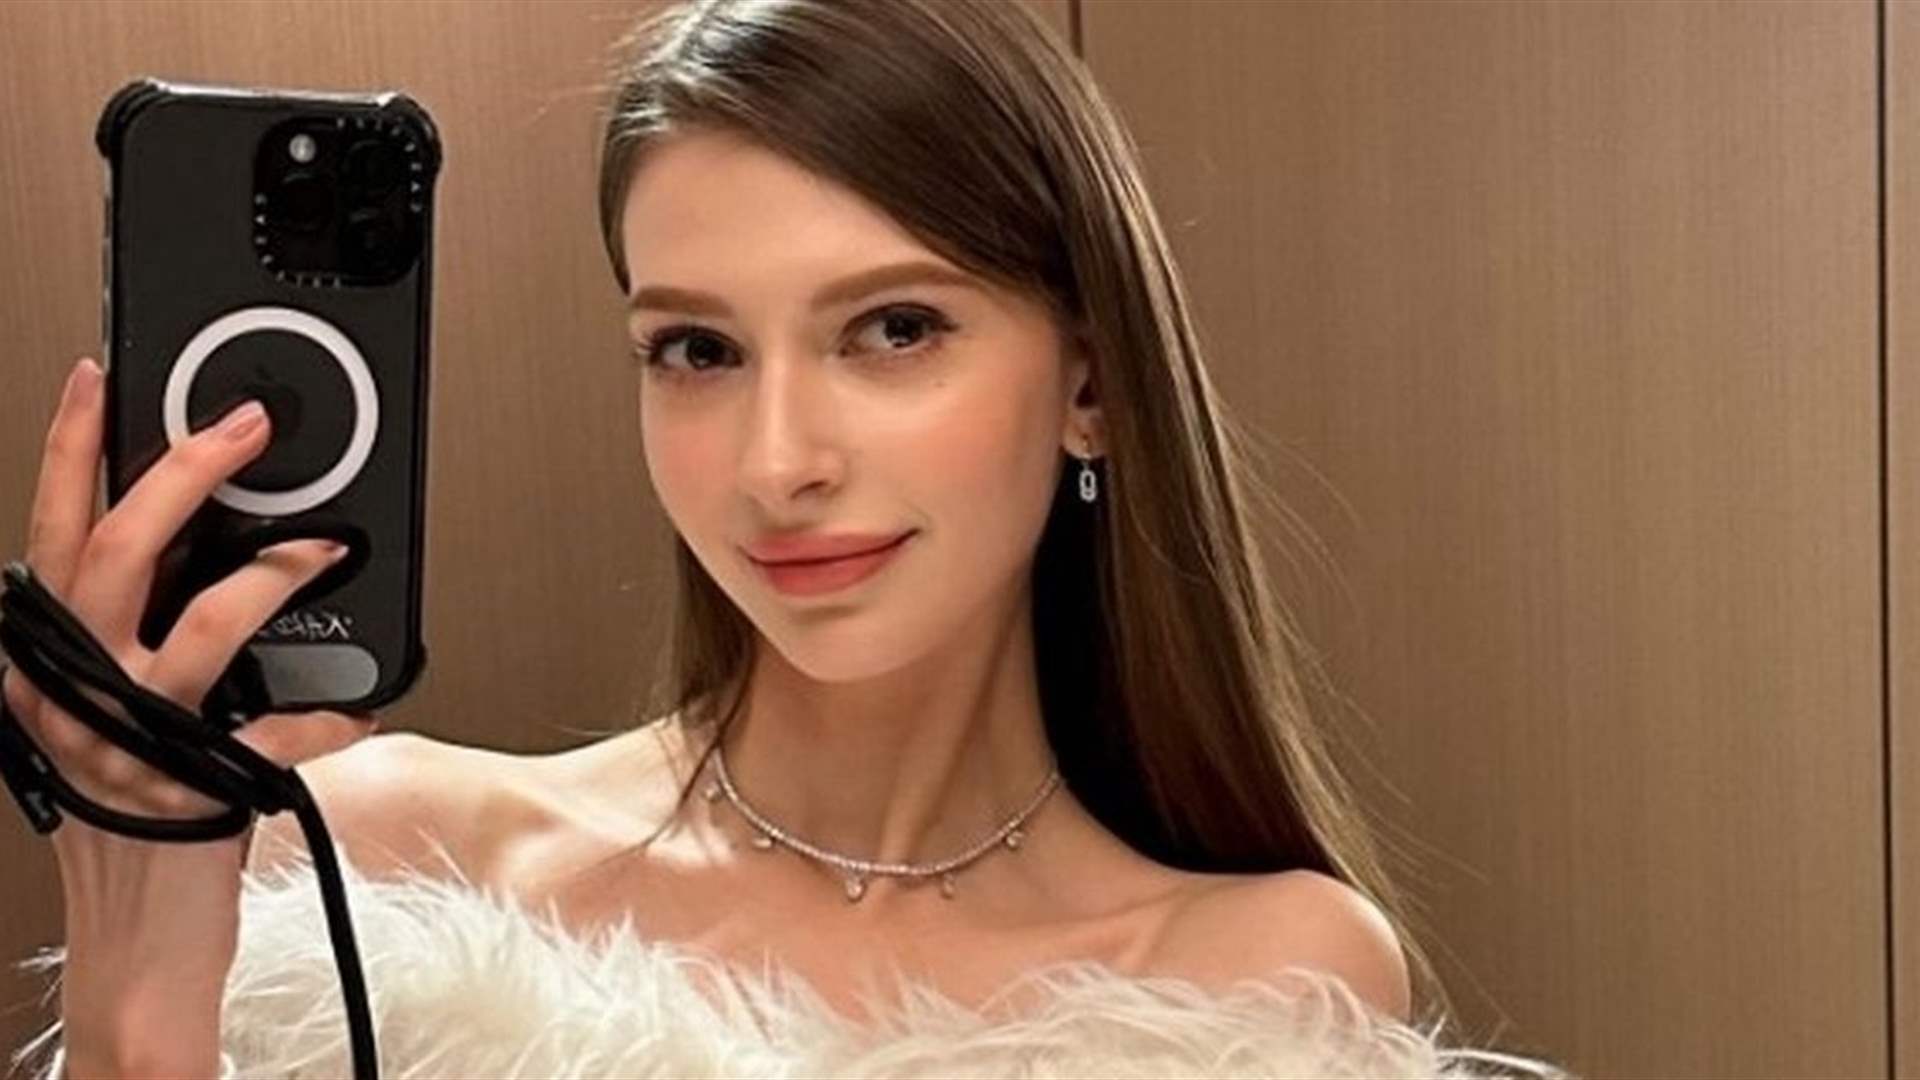 ملكة جمال اليابان المولودة في أوكرانيا تتخلى عن لقبها... والسبب: علاقة غرامية؟!